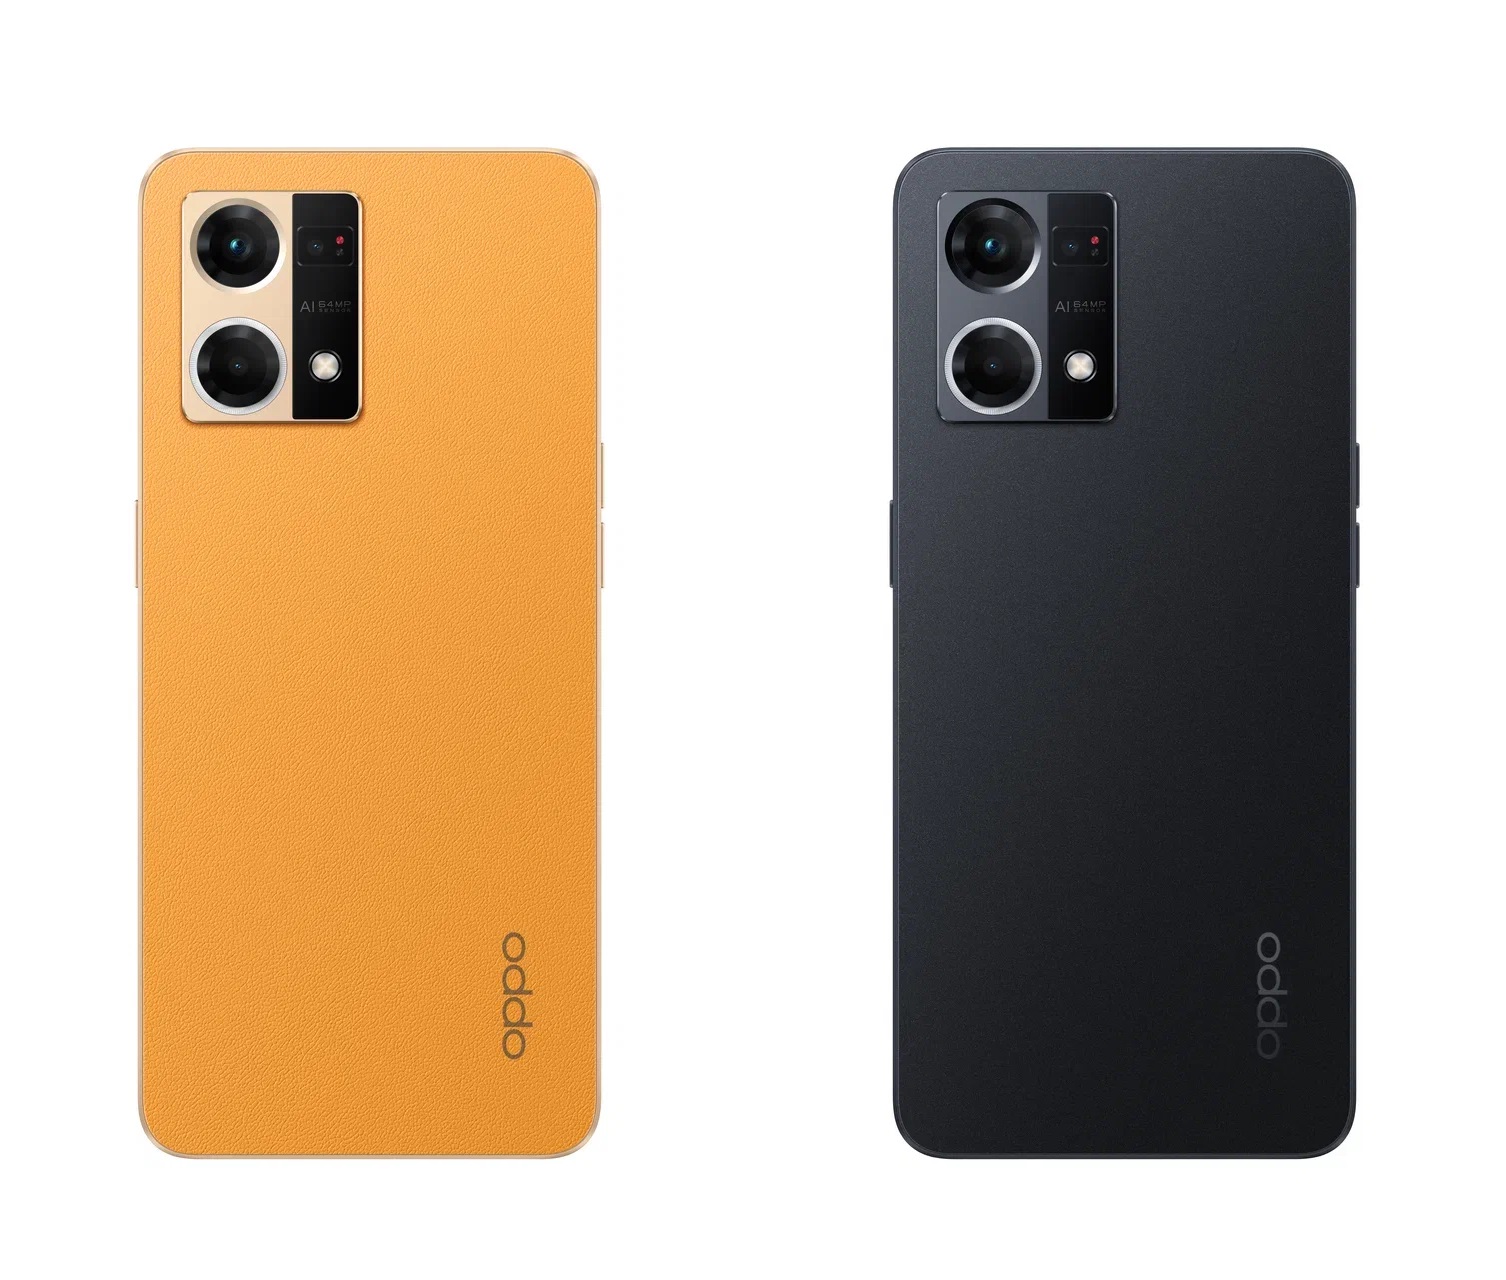 OPPO представляет Reno7: смартфон с уникальными возможностями камеры фото